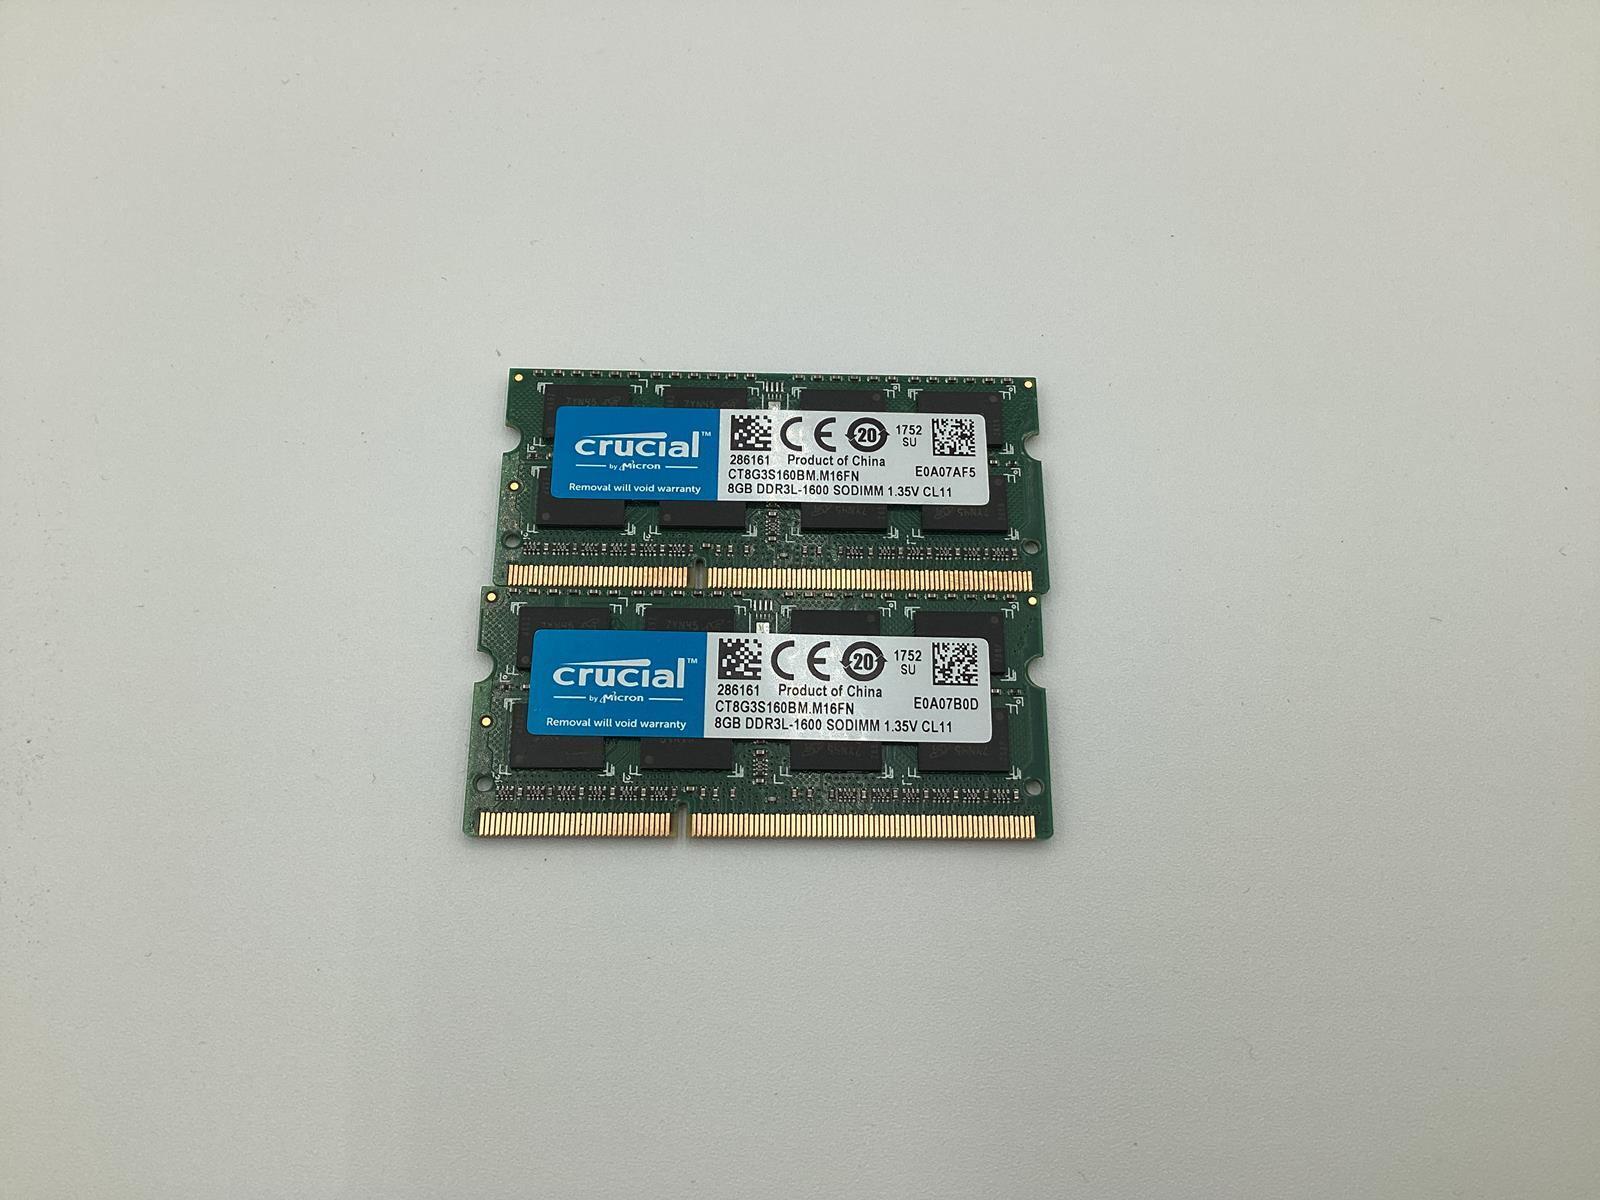 CRUCIAL 16GB (2 x 8GB) PC3-1600 SO-DIMM RAM CT8G3S160BM.M16FN